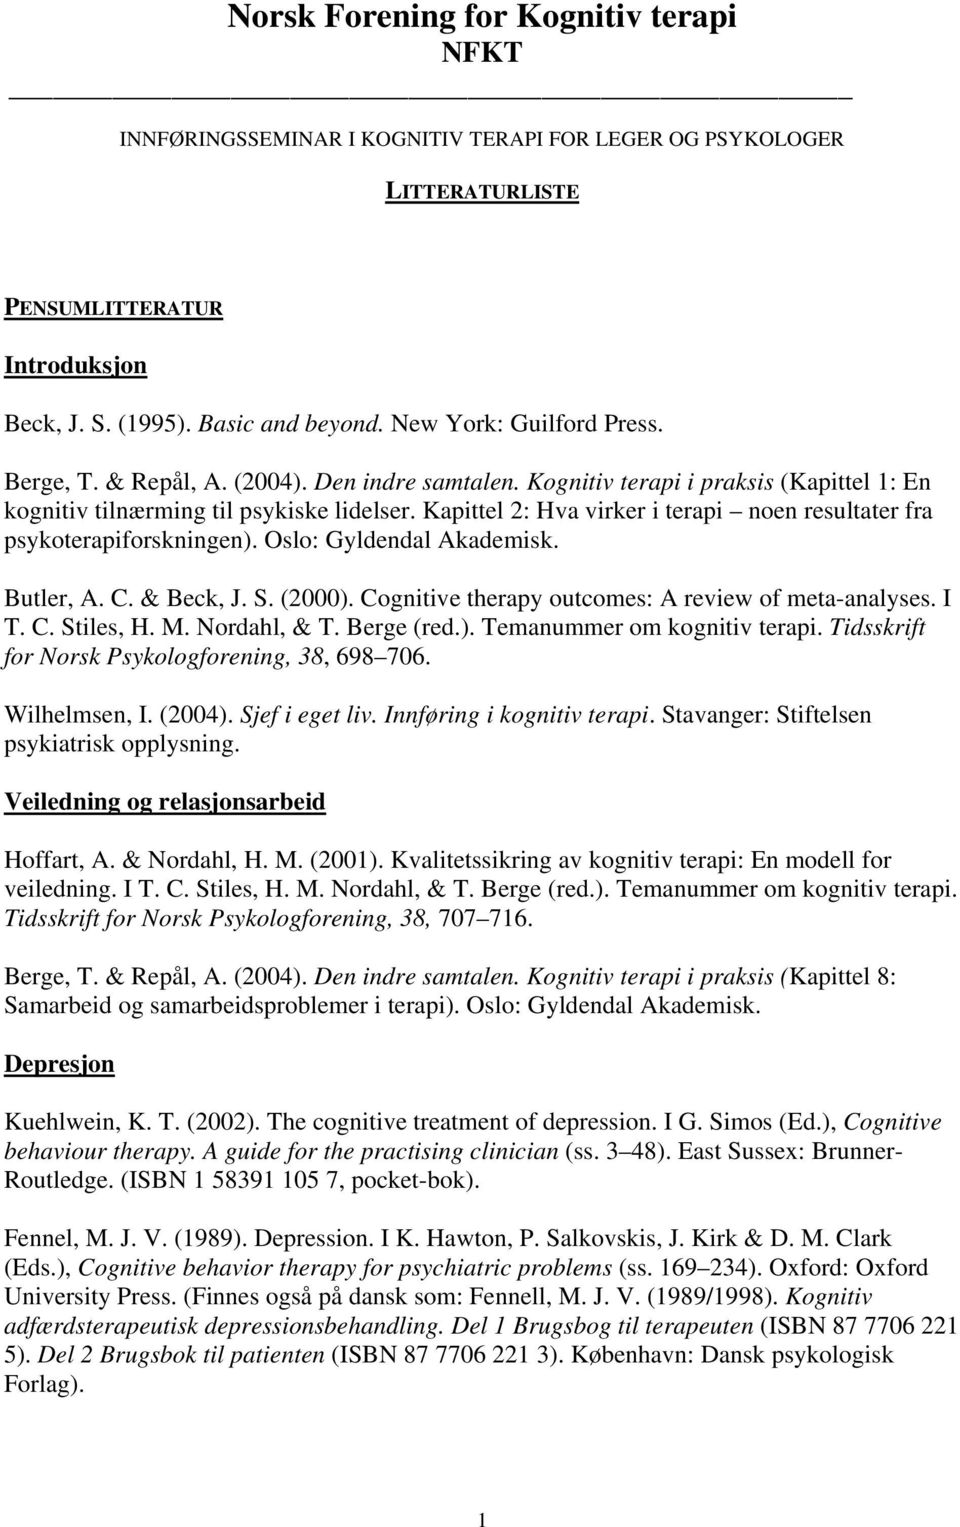 Kapittel 2: Hva virker i terapi noen resultater fra psykoterapiforskningen). Oslo: Gyldendal Akademisk. Butler, A. C. & Beck, J. S. (2000). Cognitive therapy outcomes: A review of meta-analyses. I T.